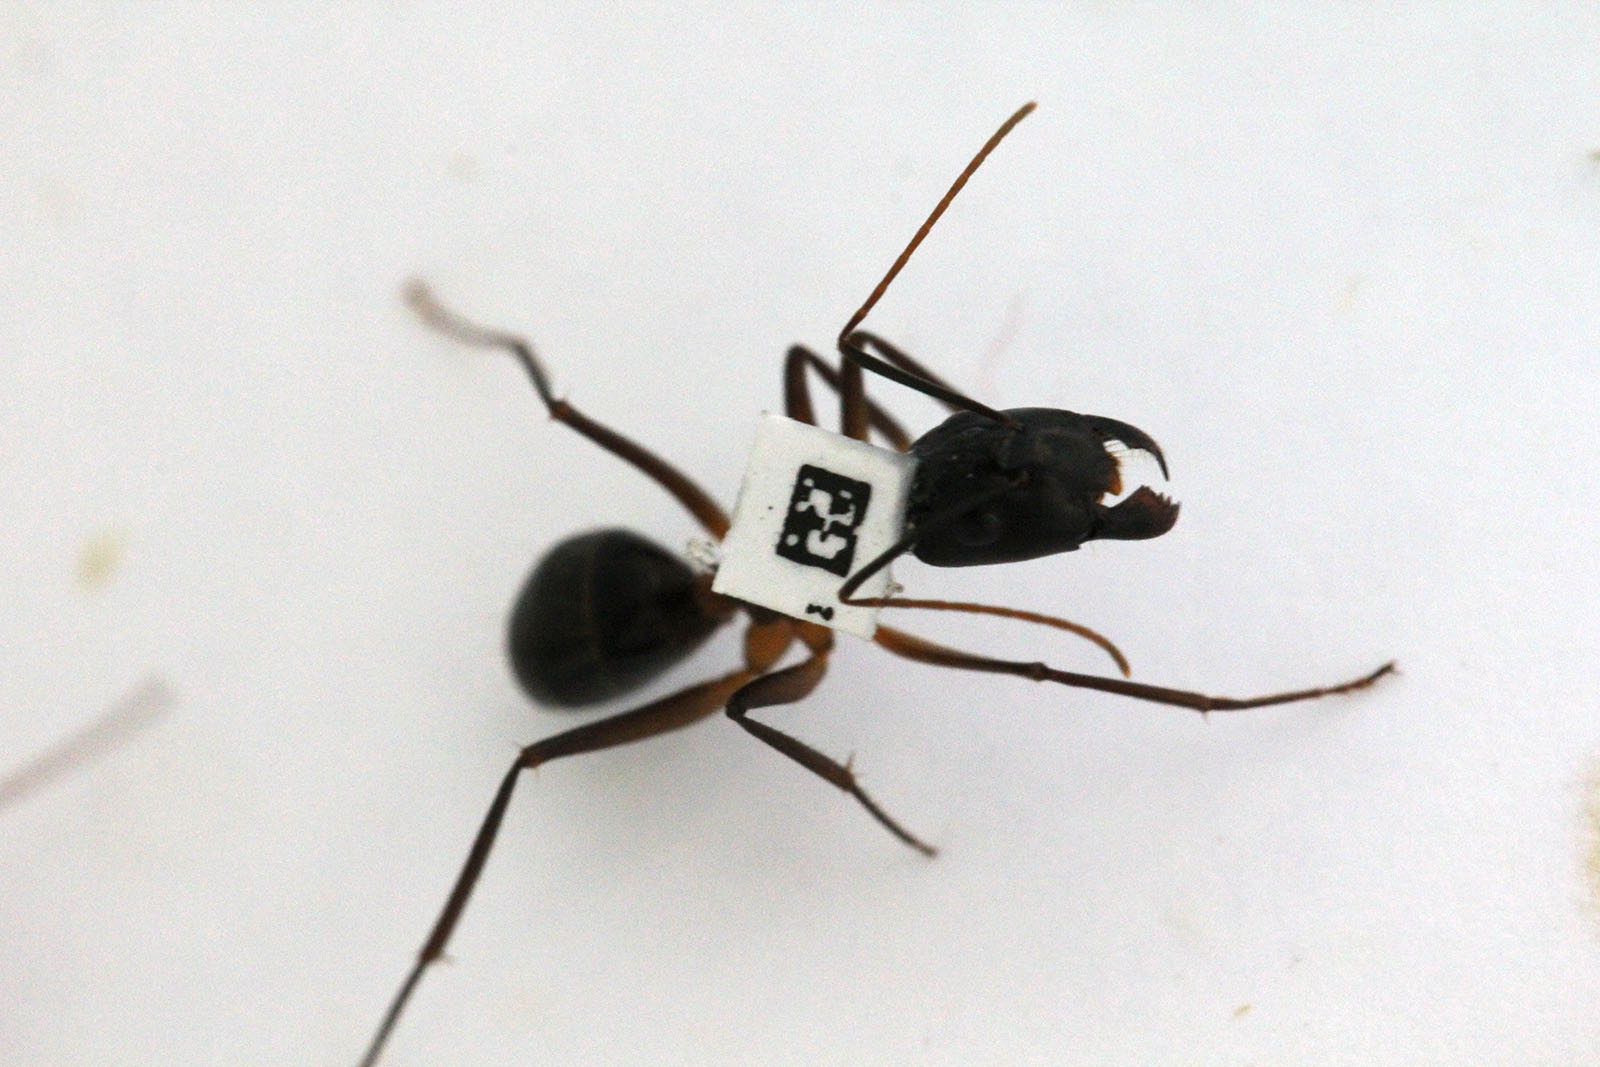 לנמלה שמשתתפת במחקר במעבדה של פרופ' עפר פיינרמן מוצמד ברקוד. "נמלים בקן נטרלו את רוב הקונפליקטים שיכולים להיות בחברה שלהן. הן 'דאגו' שלכולן יש אותו אינטרס משותף" (צילום: אלבום פרטי)